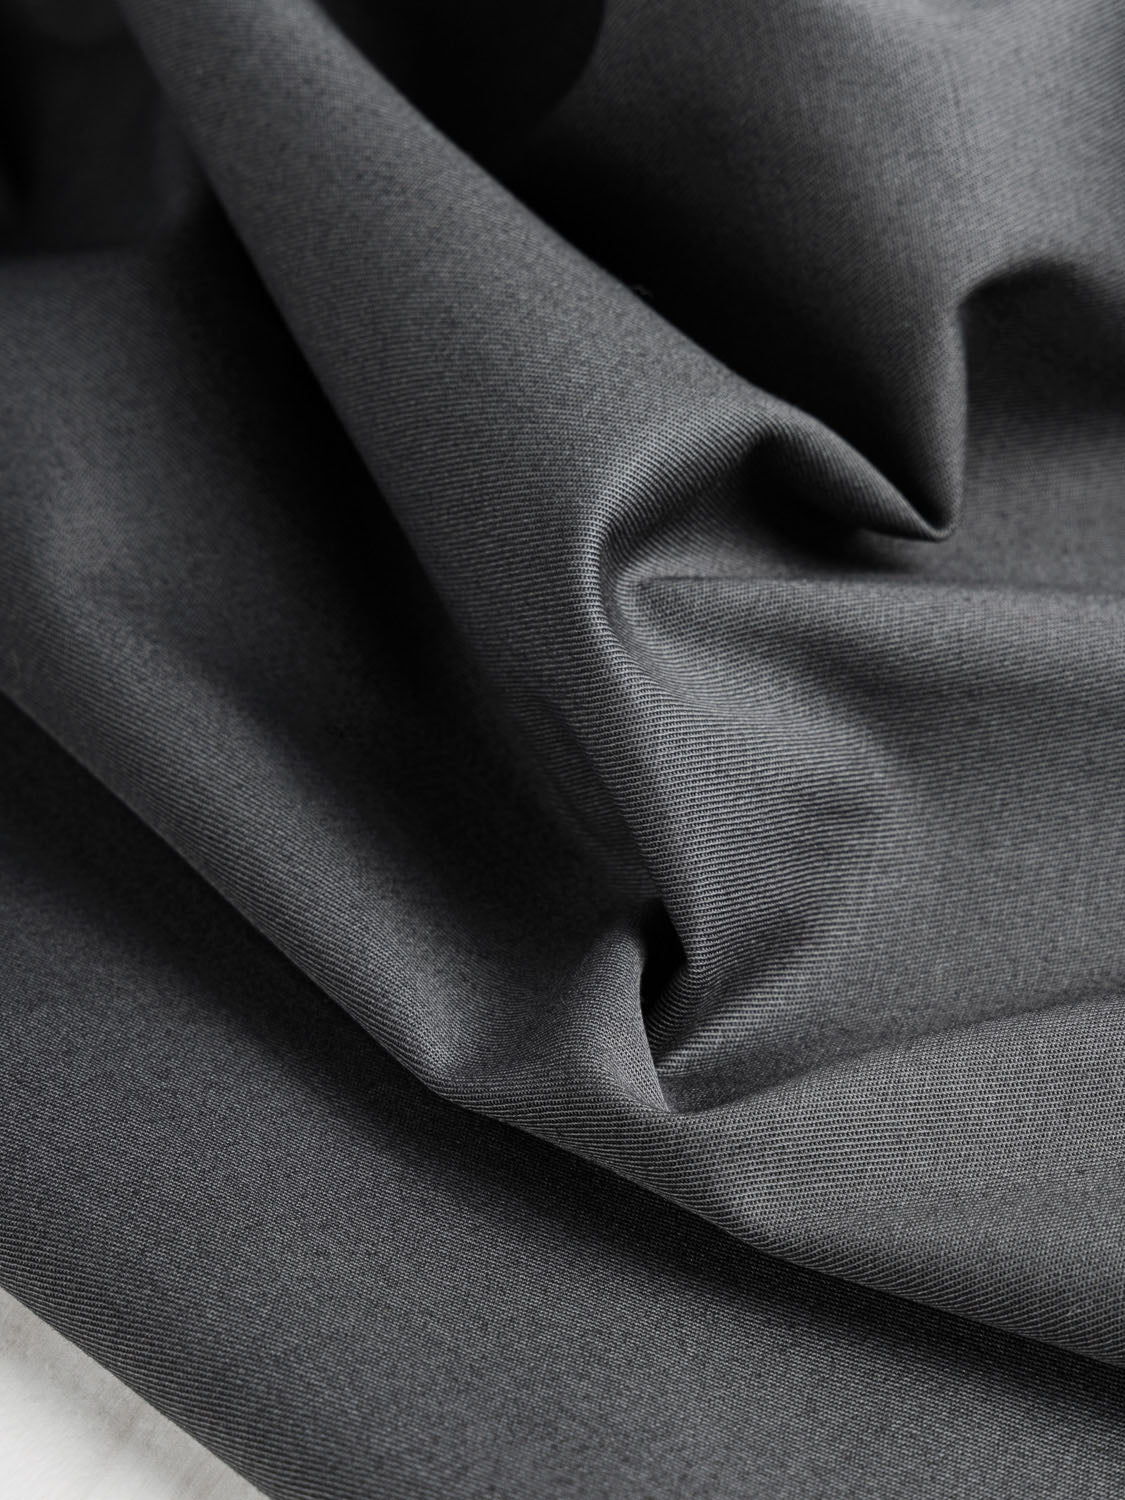 100% Organic Cotton Knit Jersey Fabric. Mechanical stretch - 1/2